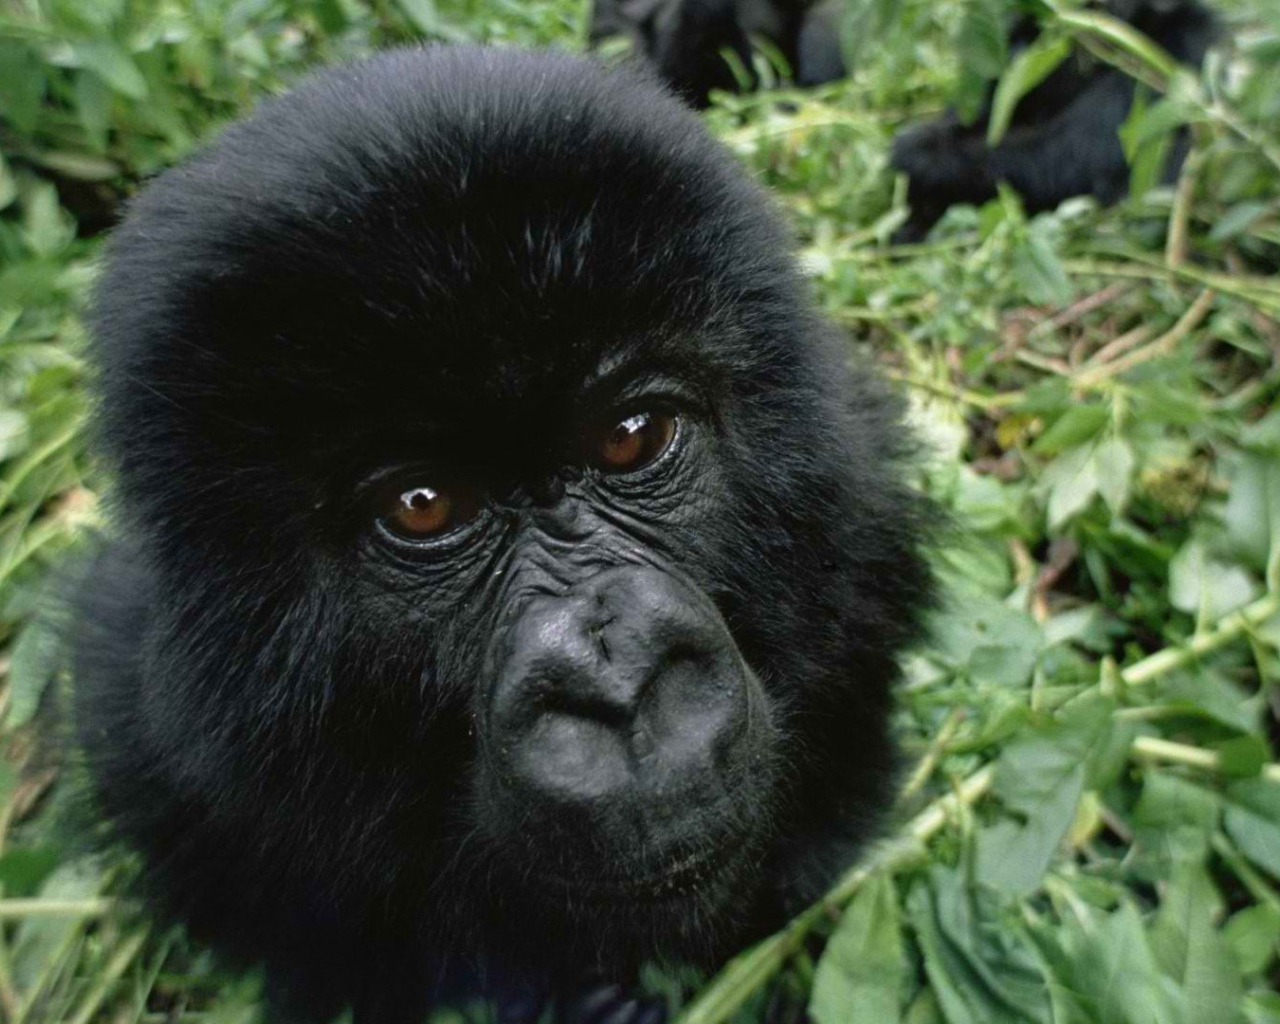 Взгляд детеныша гориллы